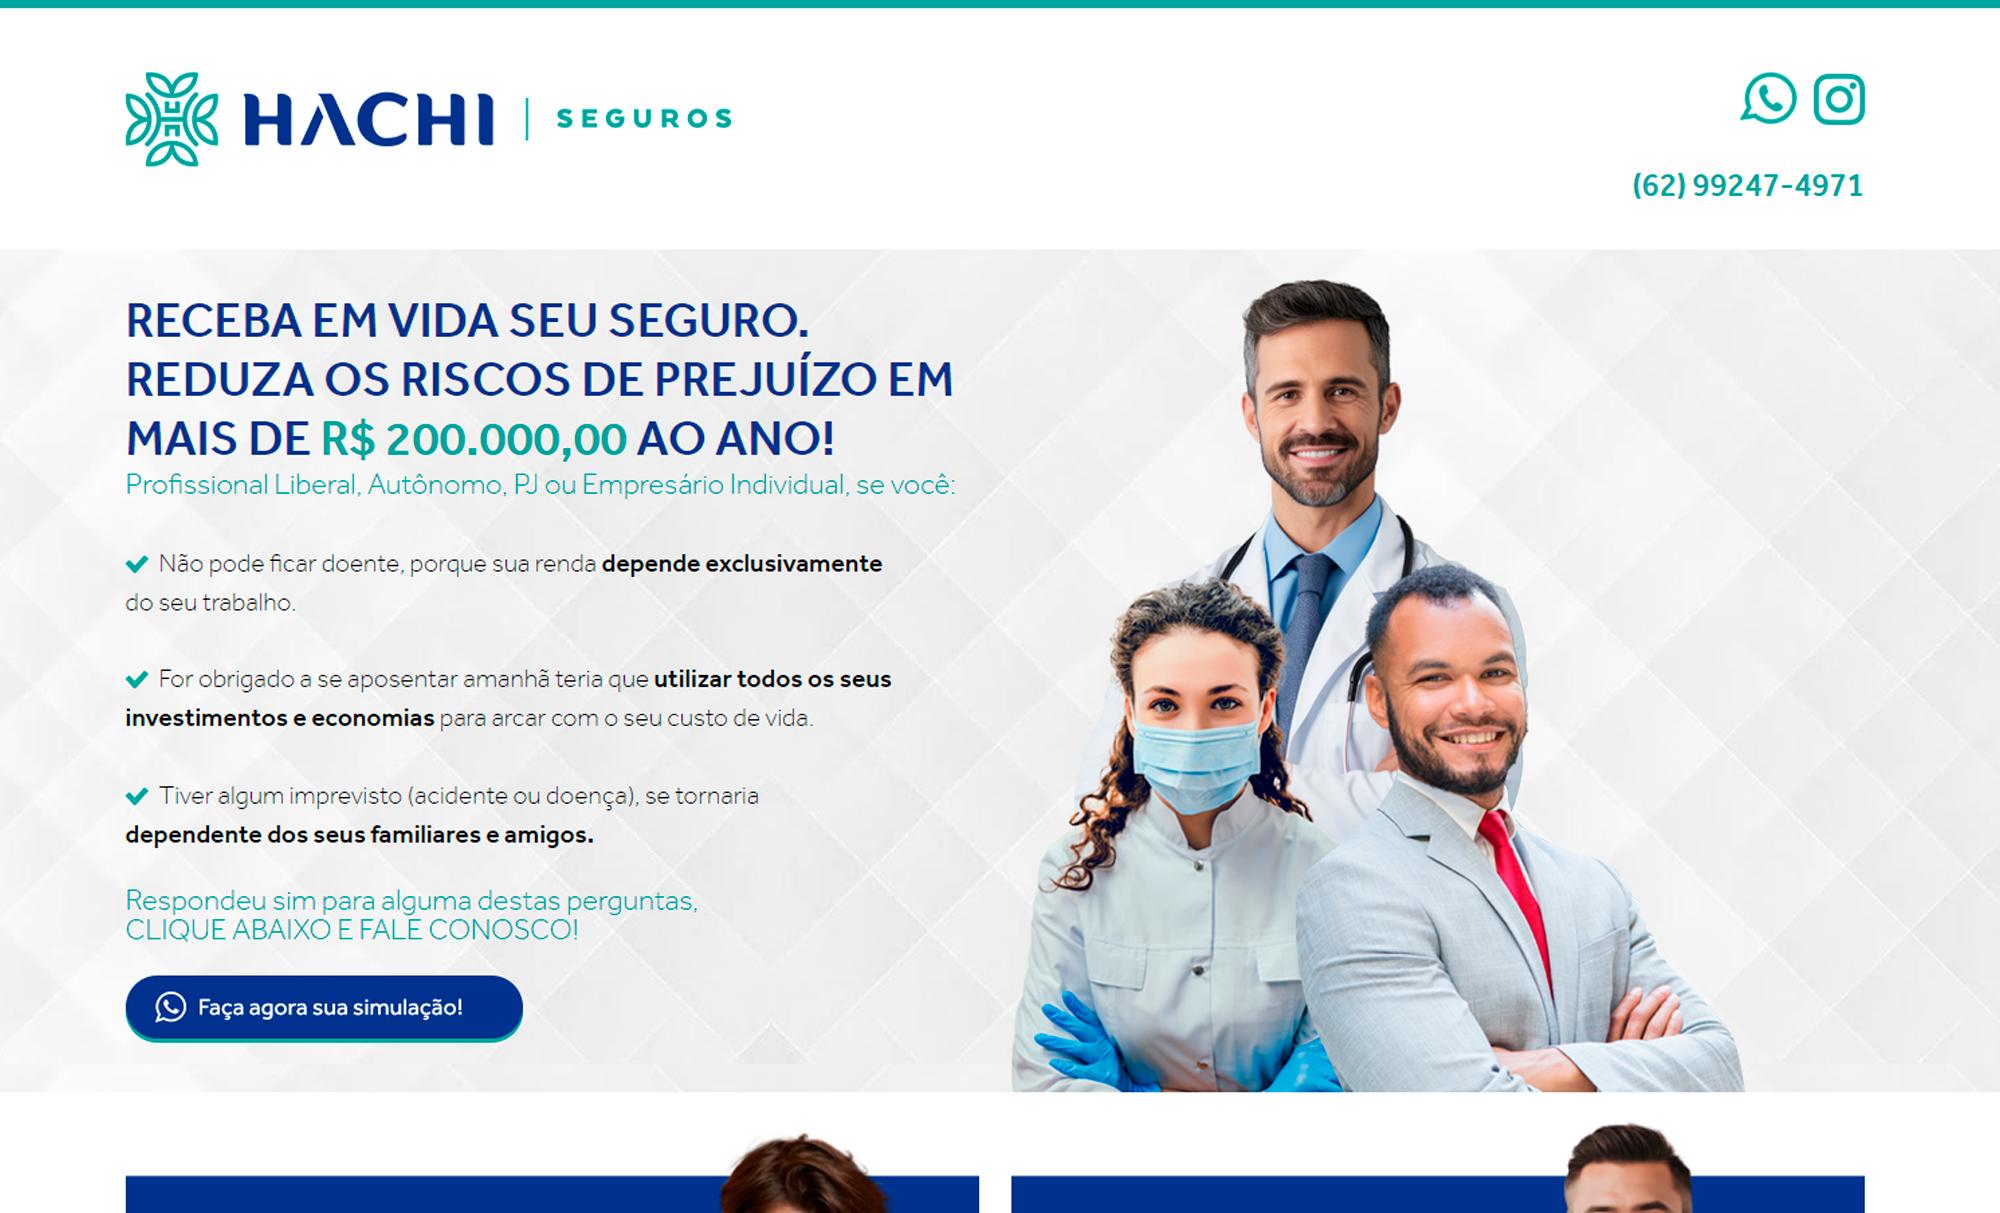 Hachi Seguros - Cliente AsWEb